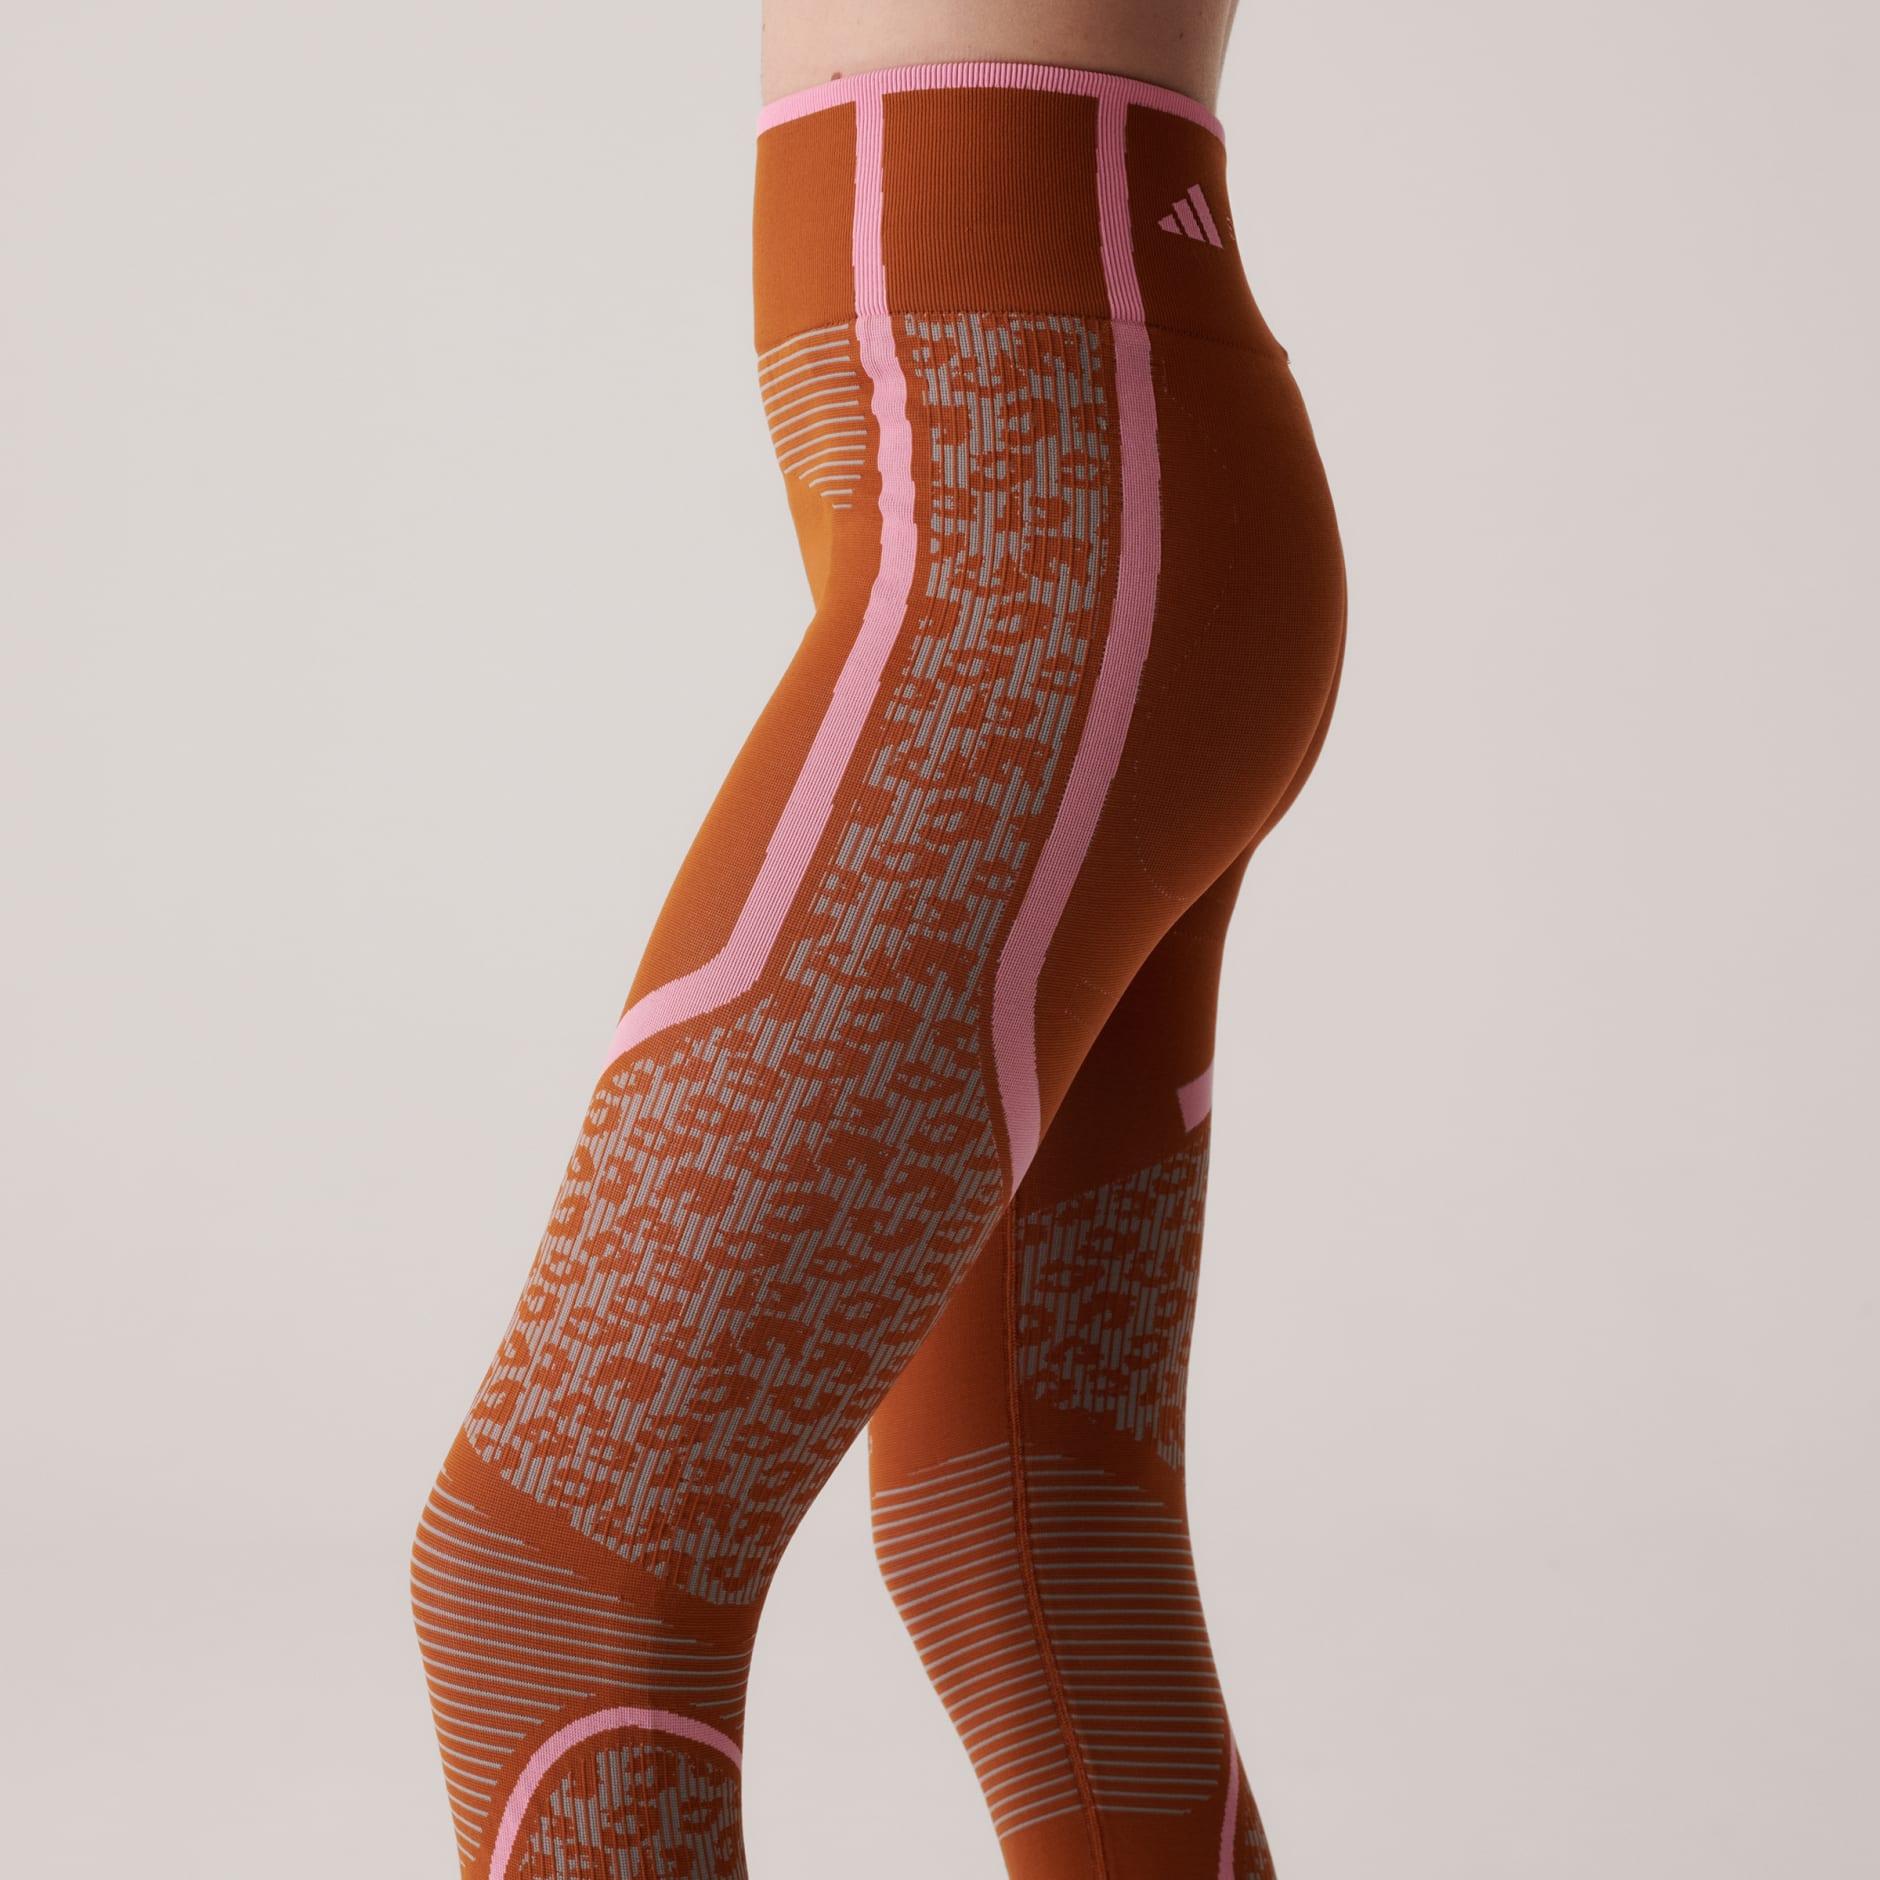 adidas By Stella McCartney True Strength Seamless Yoga legging in